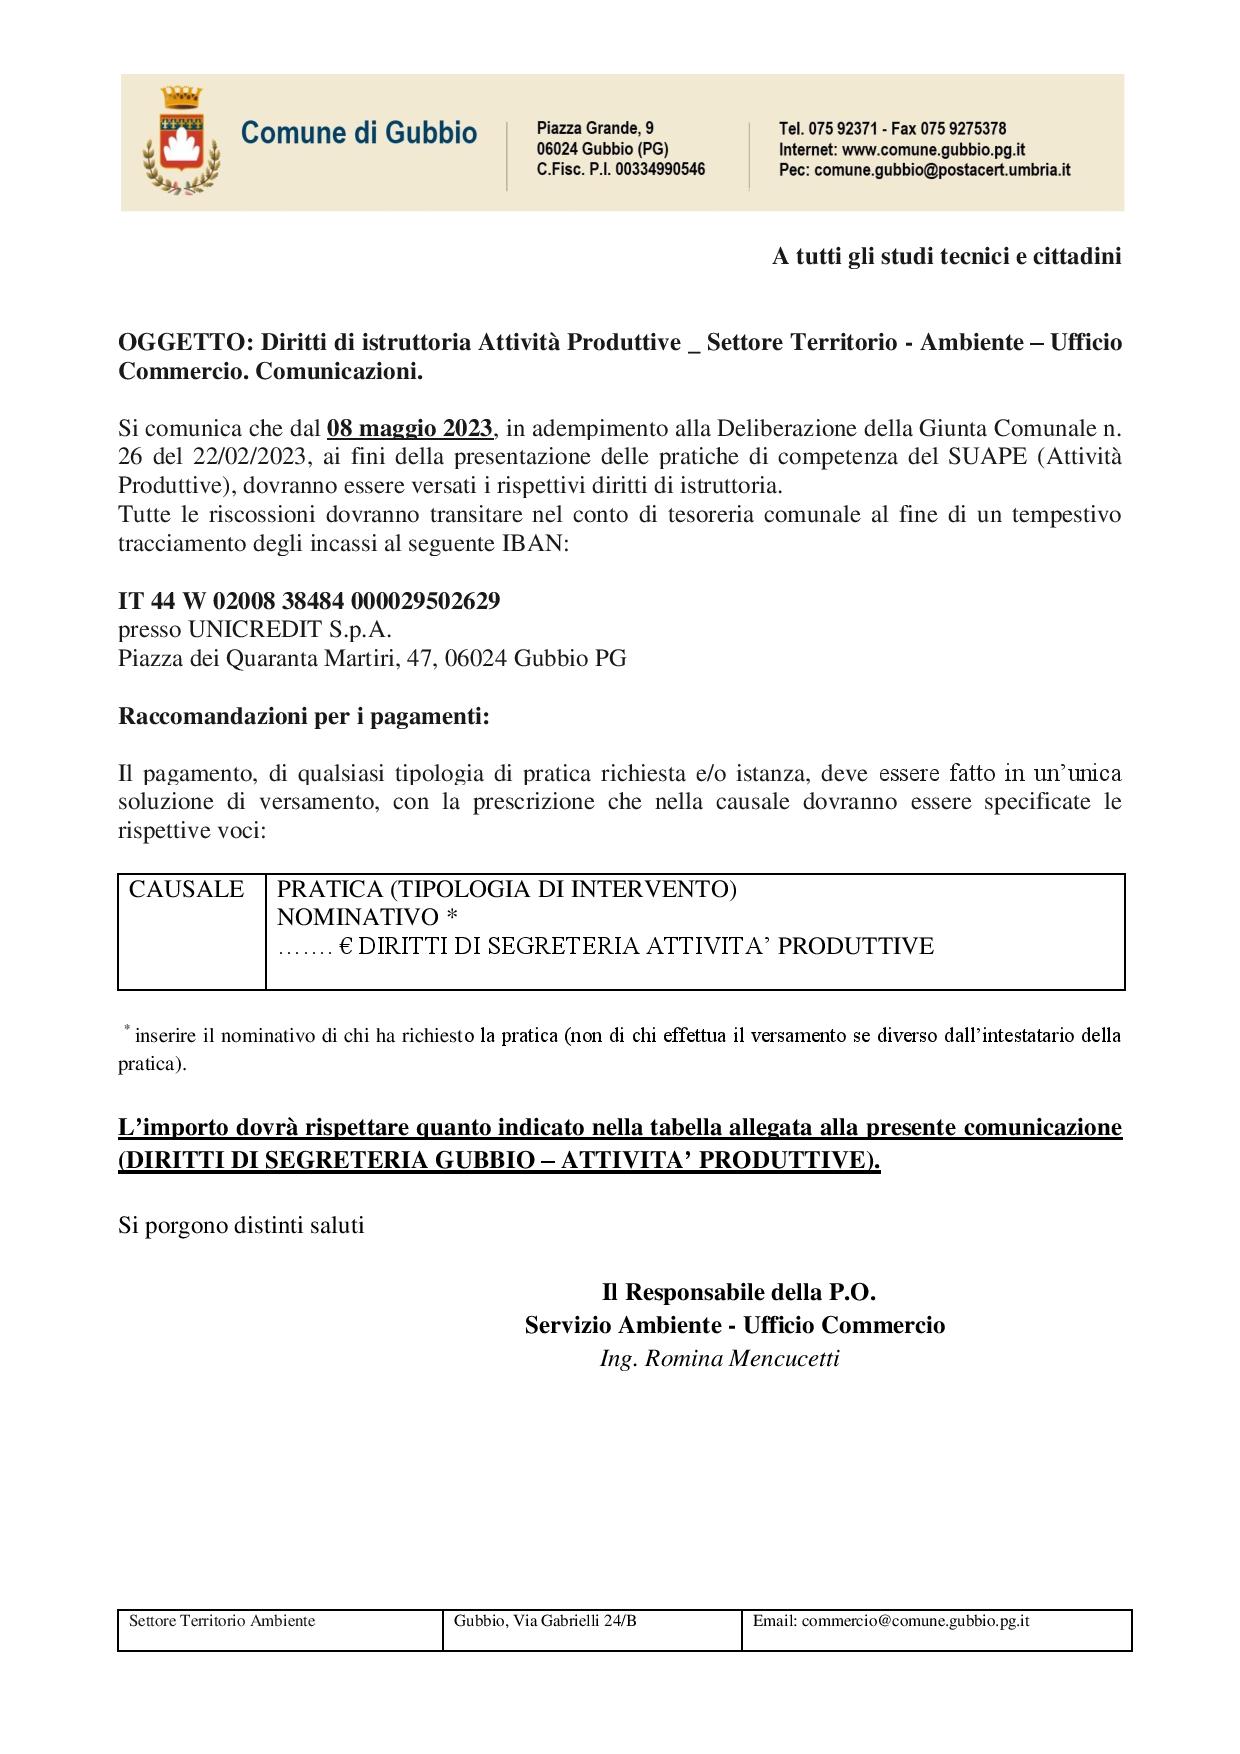 COMUNICAZIONE-DIRITTI-DI-SEGRETERIA-ATTIVITA-PRODUTTIVE-page-001 2537